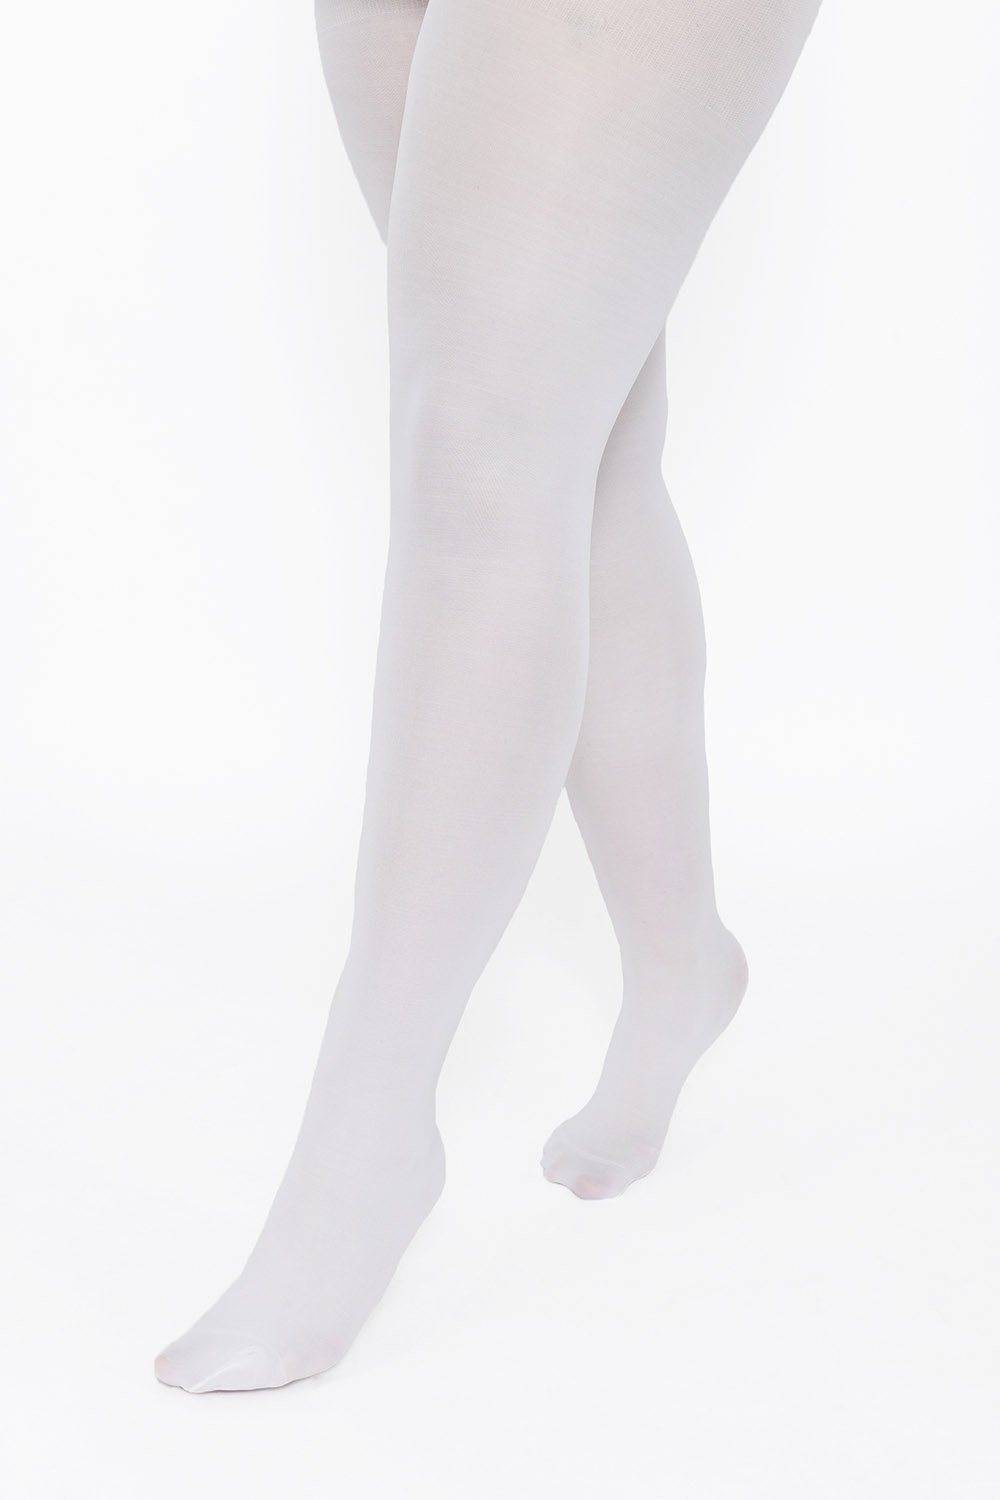 pant prinsesse jordnødder Plus Size White 40 Denier Tights | Love Leggings